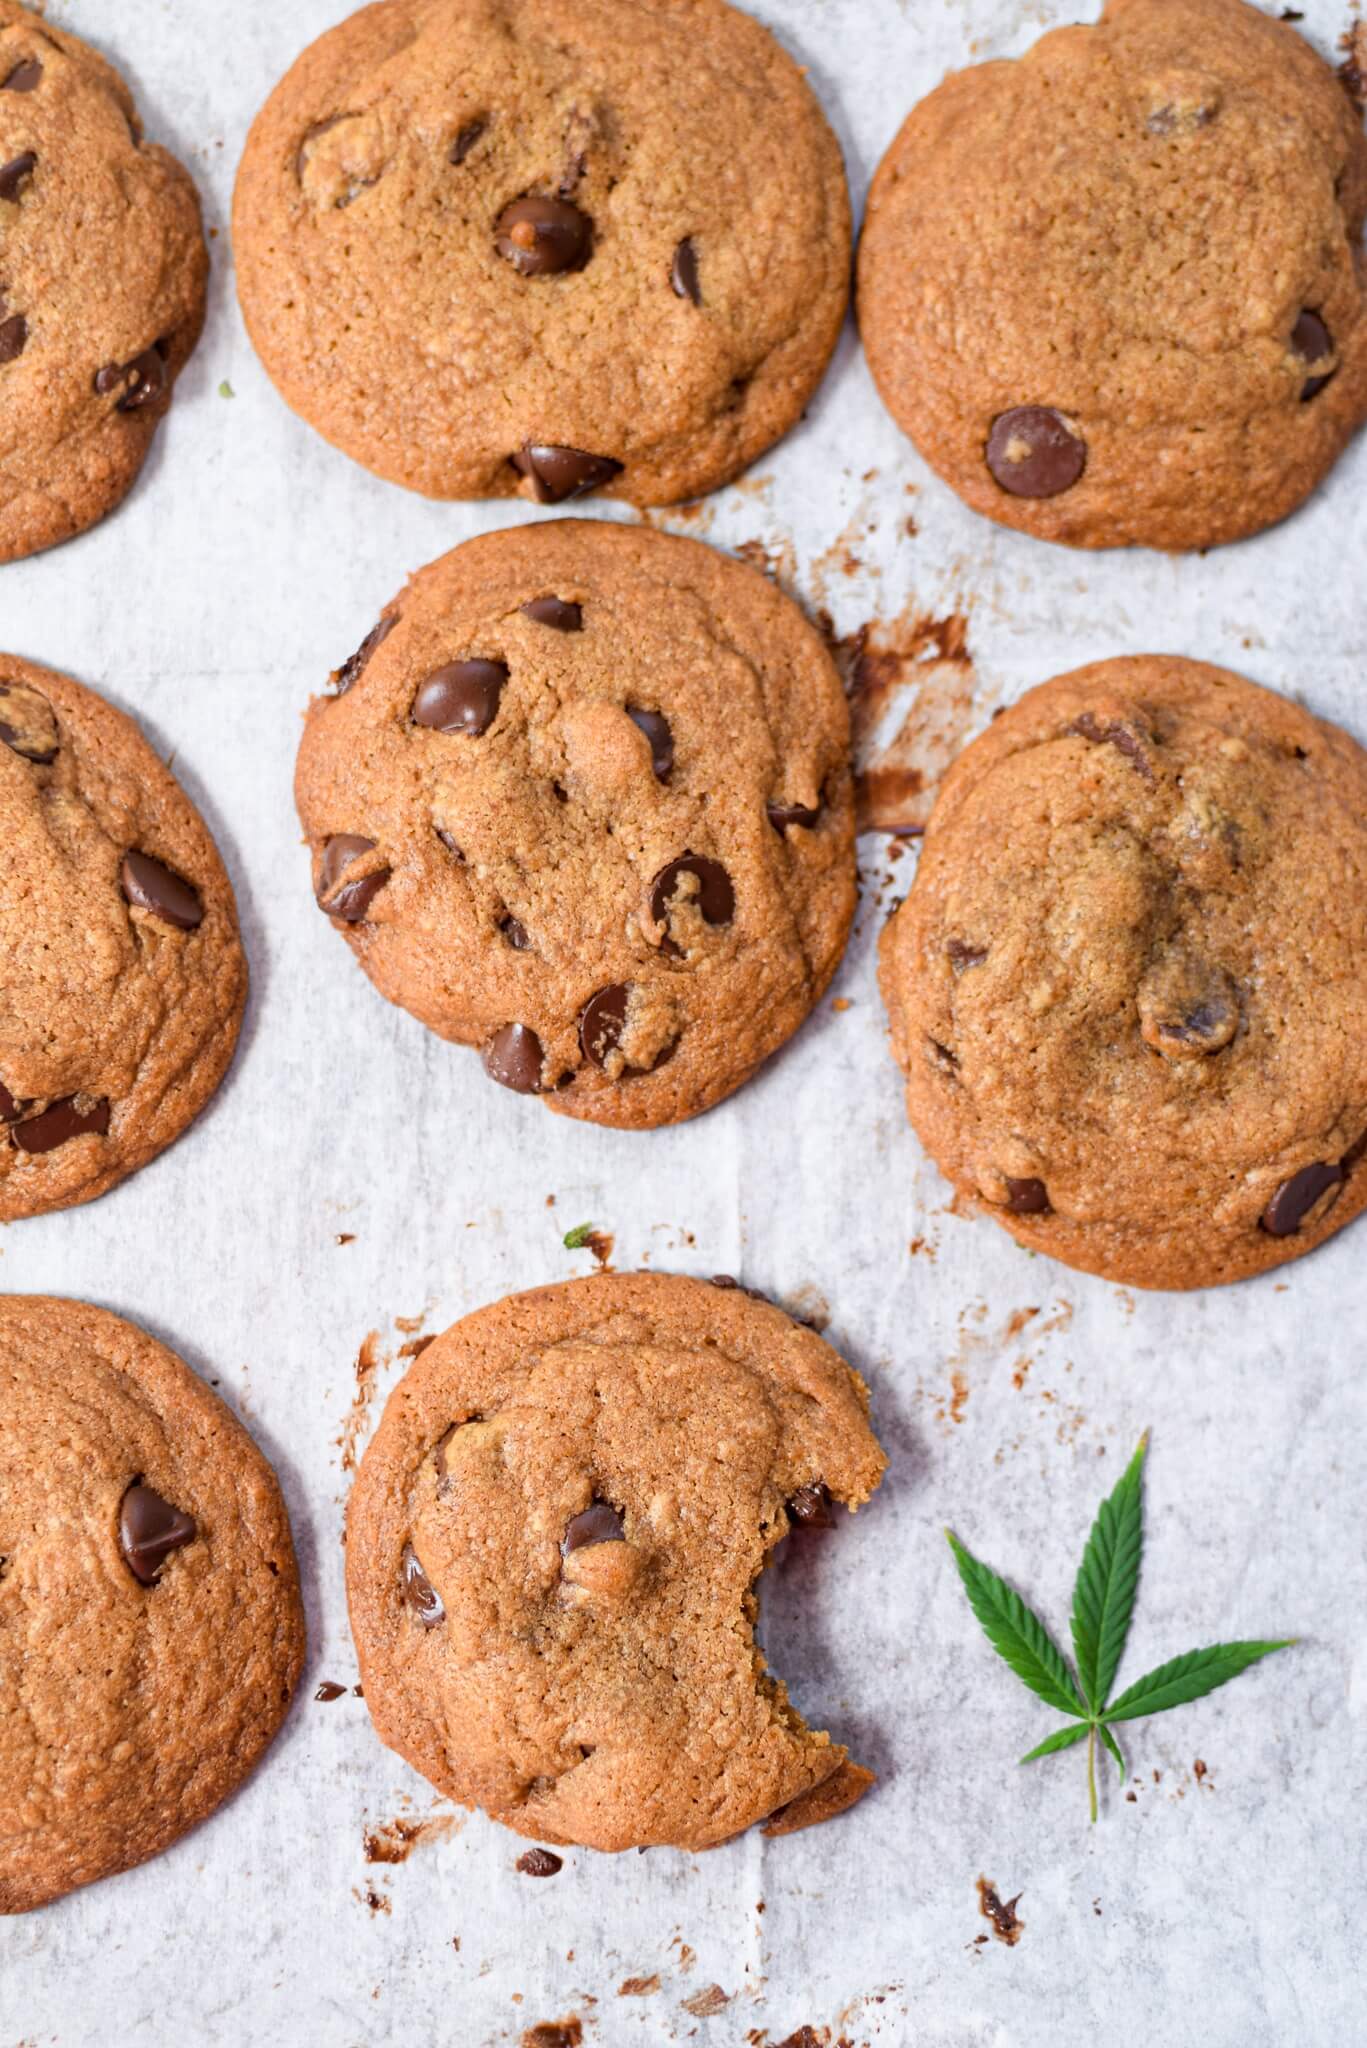 Benefits of Weed Cookies